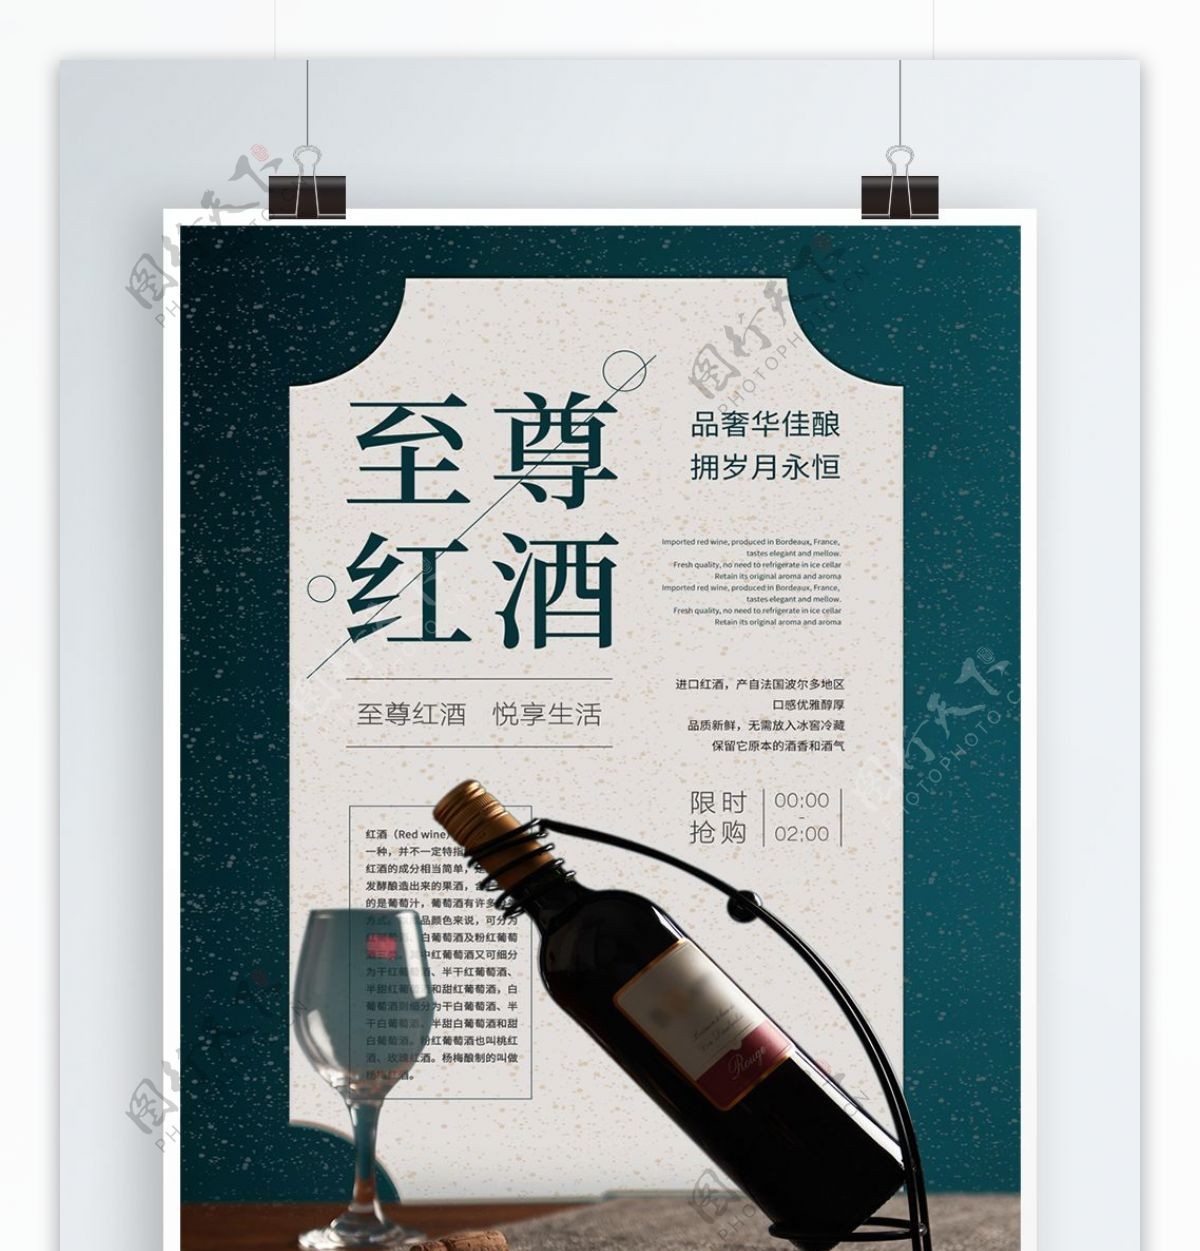 中国风复古红酒酒类促销海报